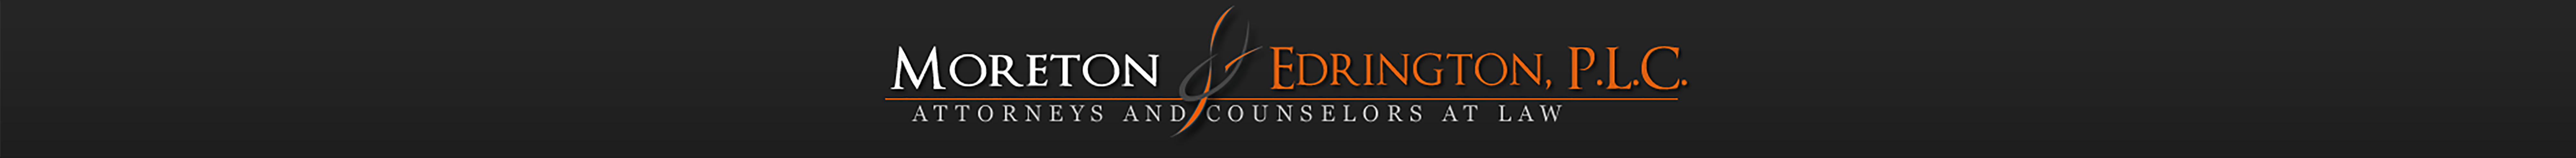 Edrington Logo - Moreton & Edrington, P.L.C. and Counselors